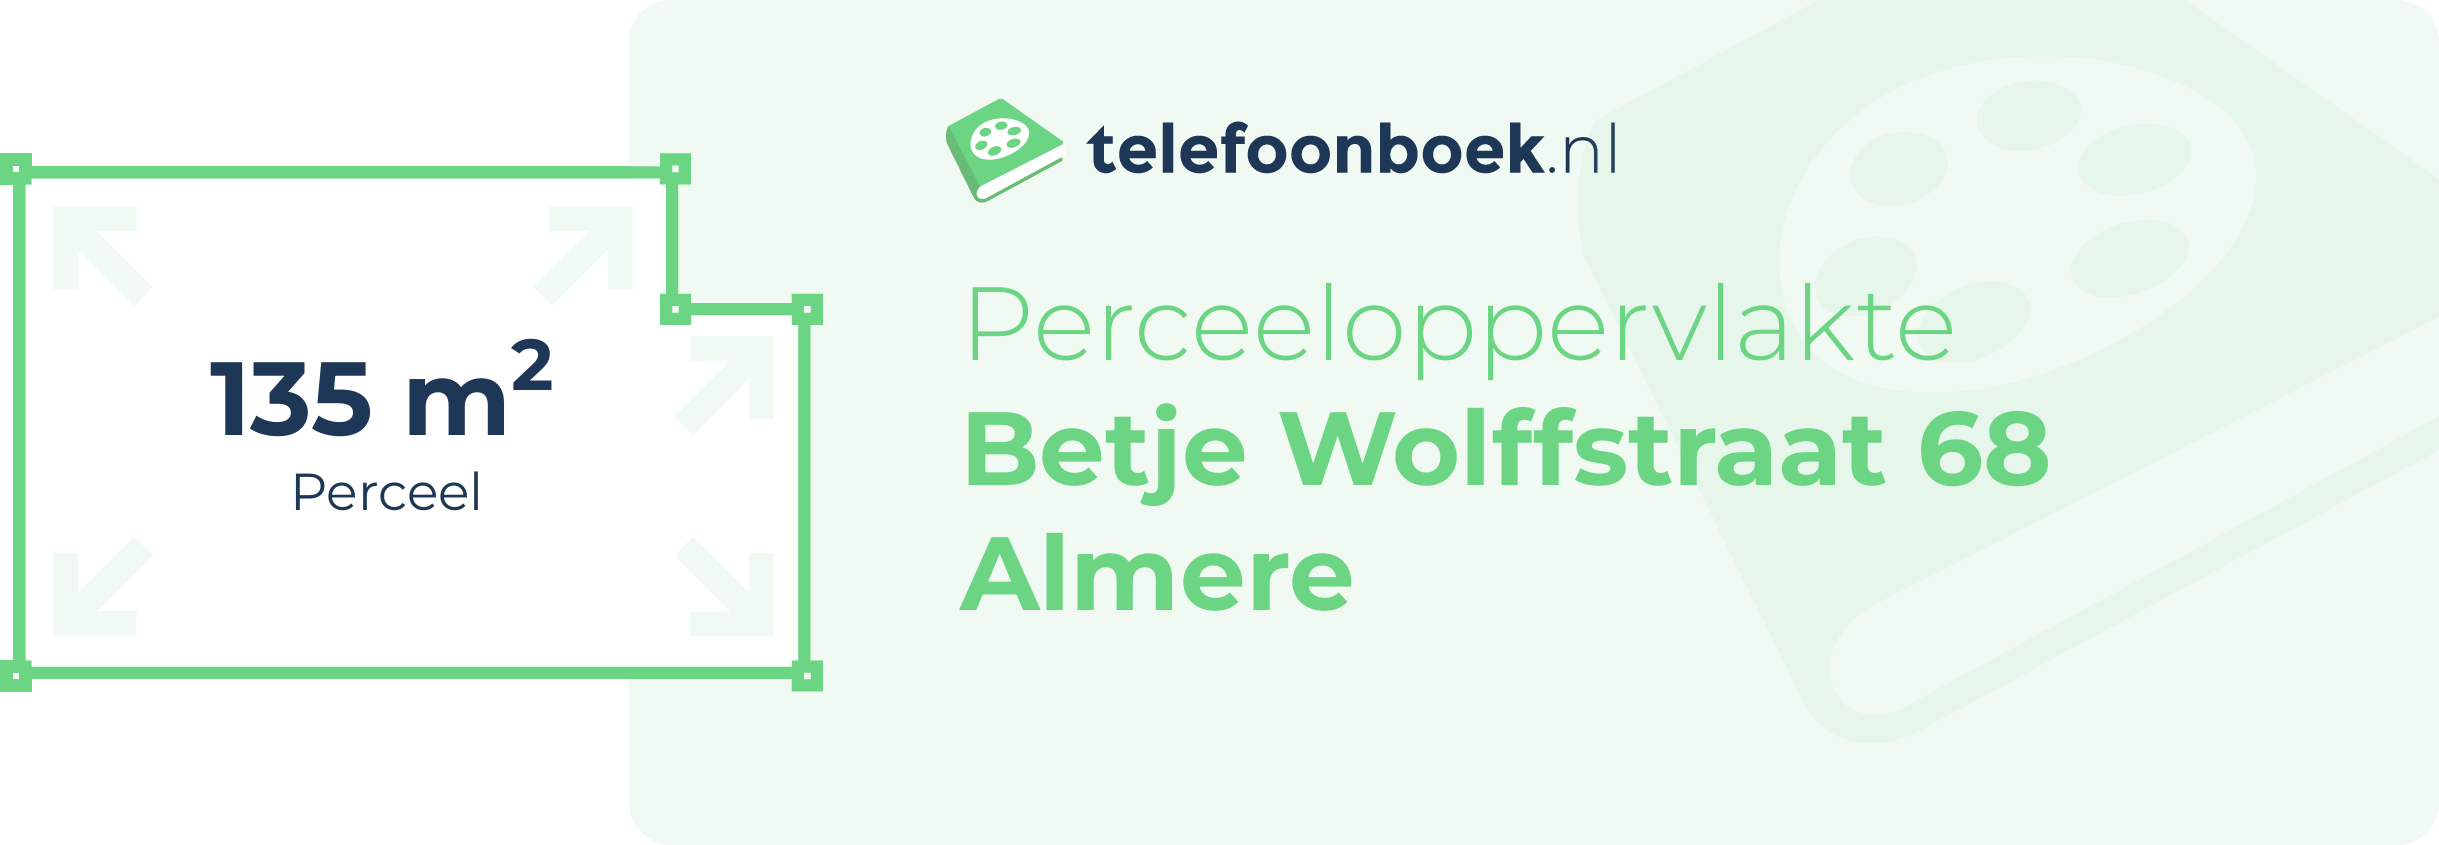 Perceeloppervlakte Betje Wolffstraat 68 Almere